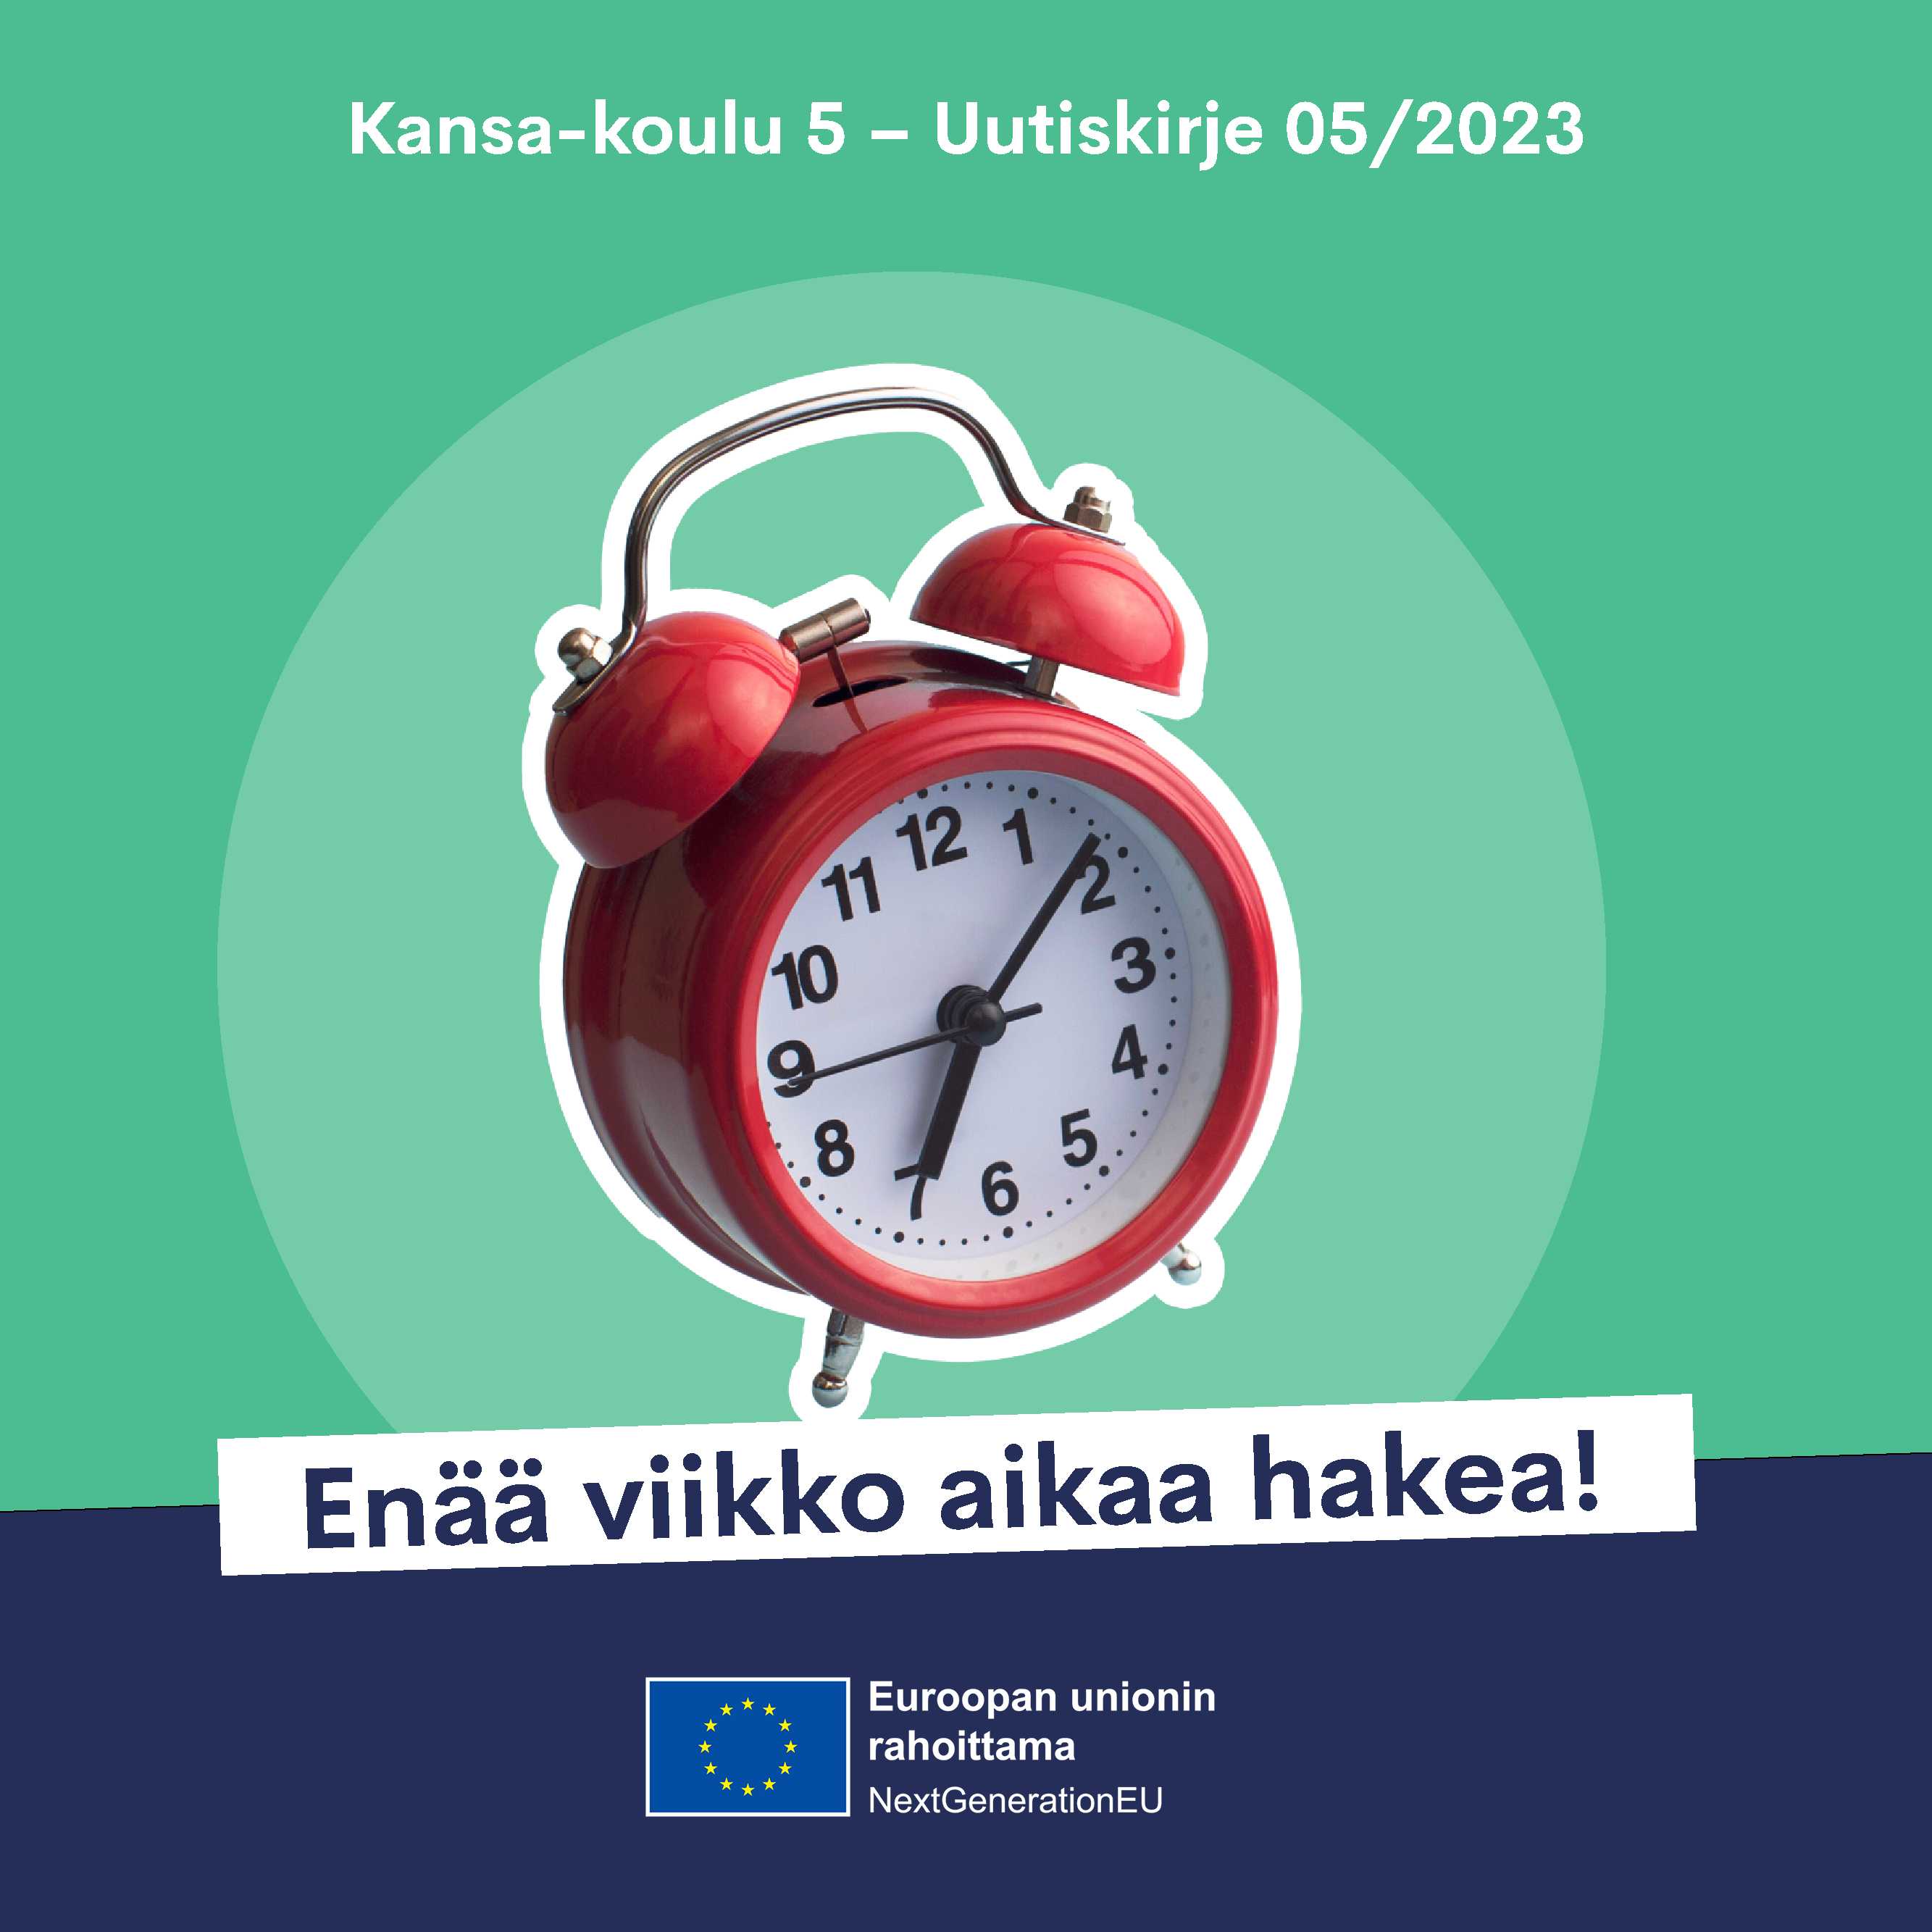 Kuvassa on punainen vanha herätyskello ja viisarit osoittavat kahdeksan yli seitsemän. lisäksi kuvassa on uutiskirjeen tiedot ja slogan Enää viikko aikaa aika! ja Euroopan unionin nextGeneration logo. 